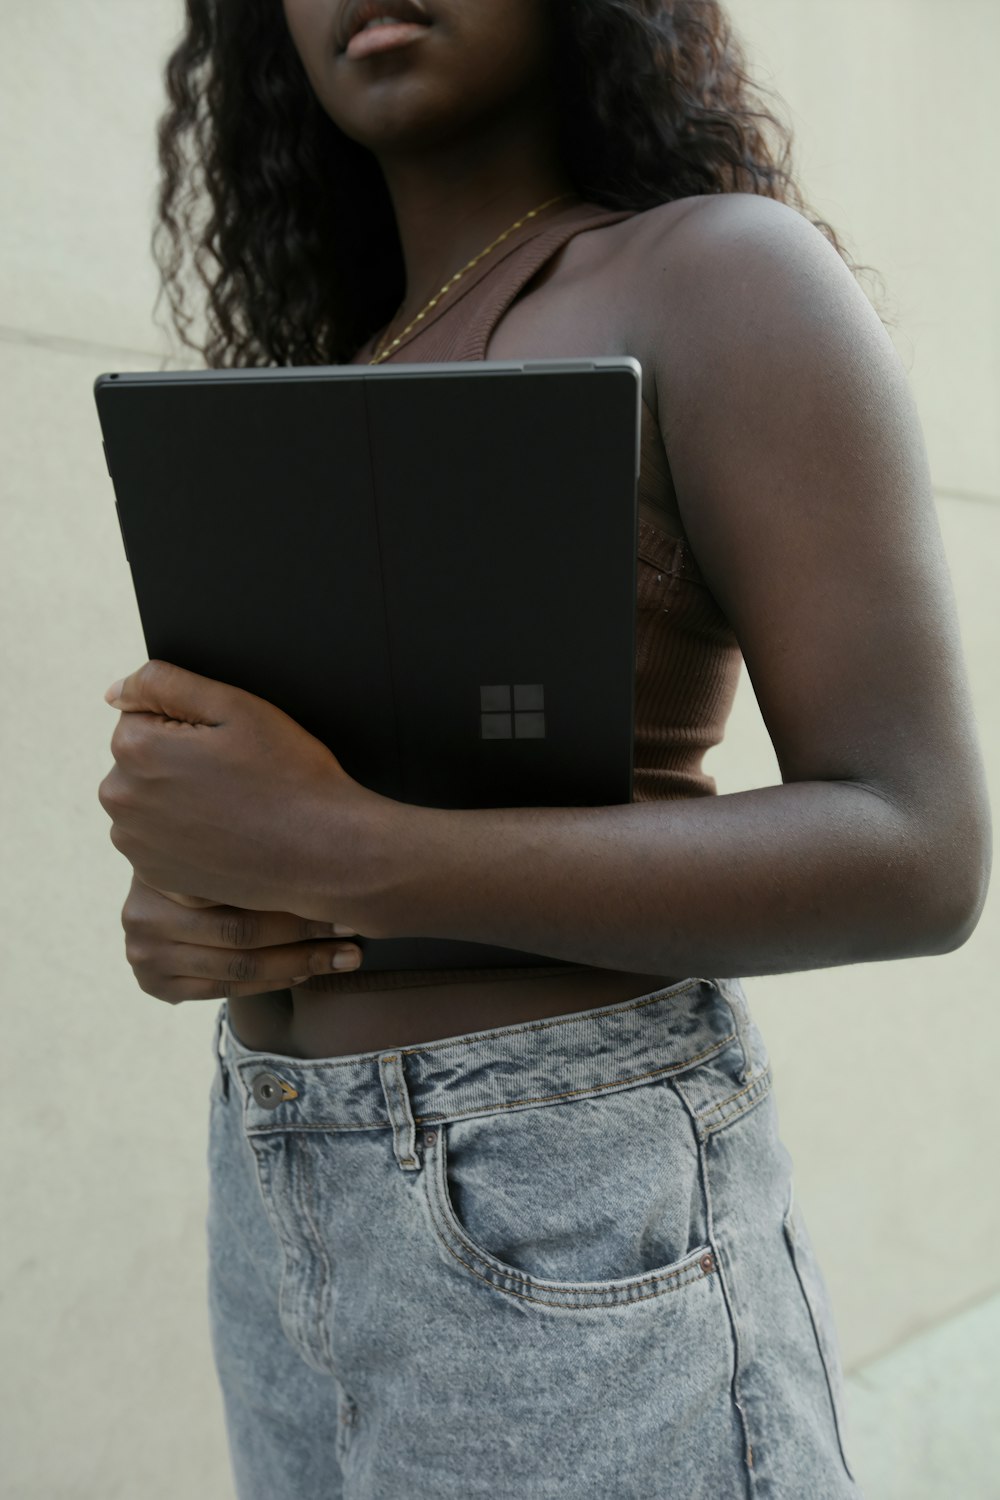 Mujer sosteniendo una computadora portátil Surface negra